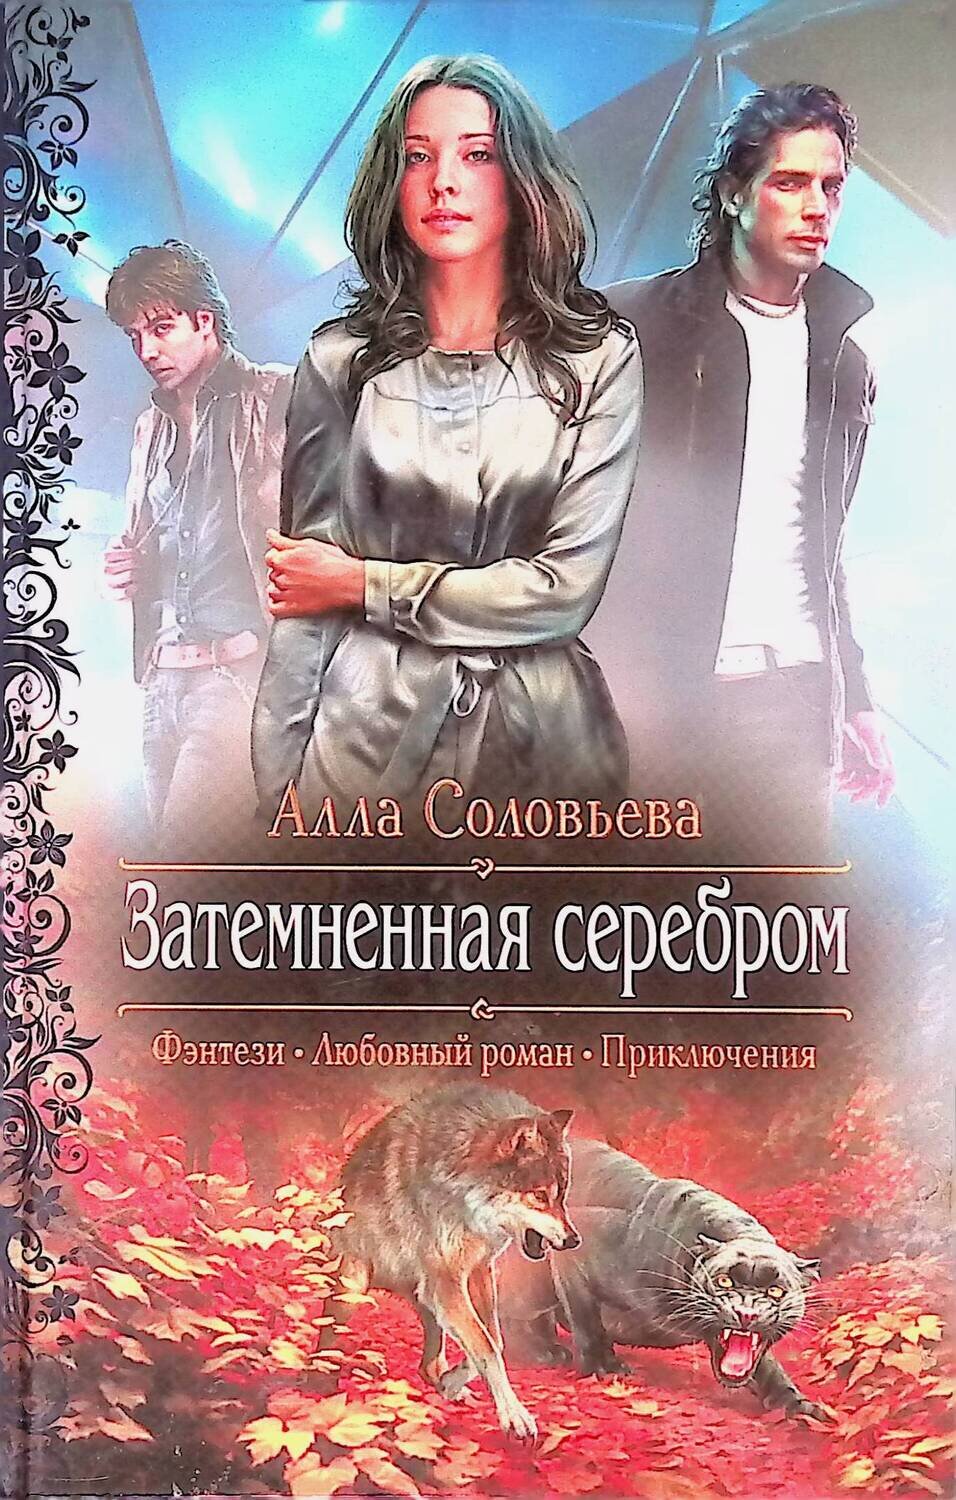 Затемненная серебром; Соловьева Анна Александровна